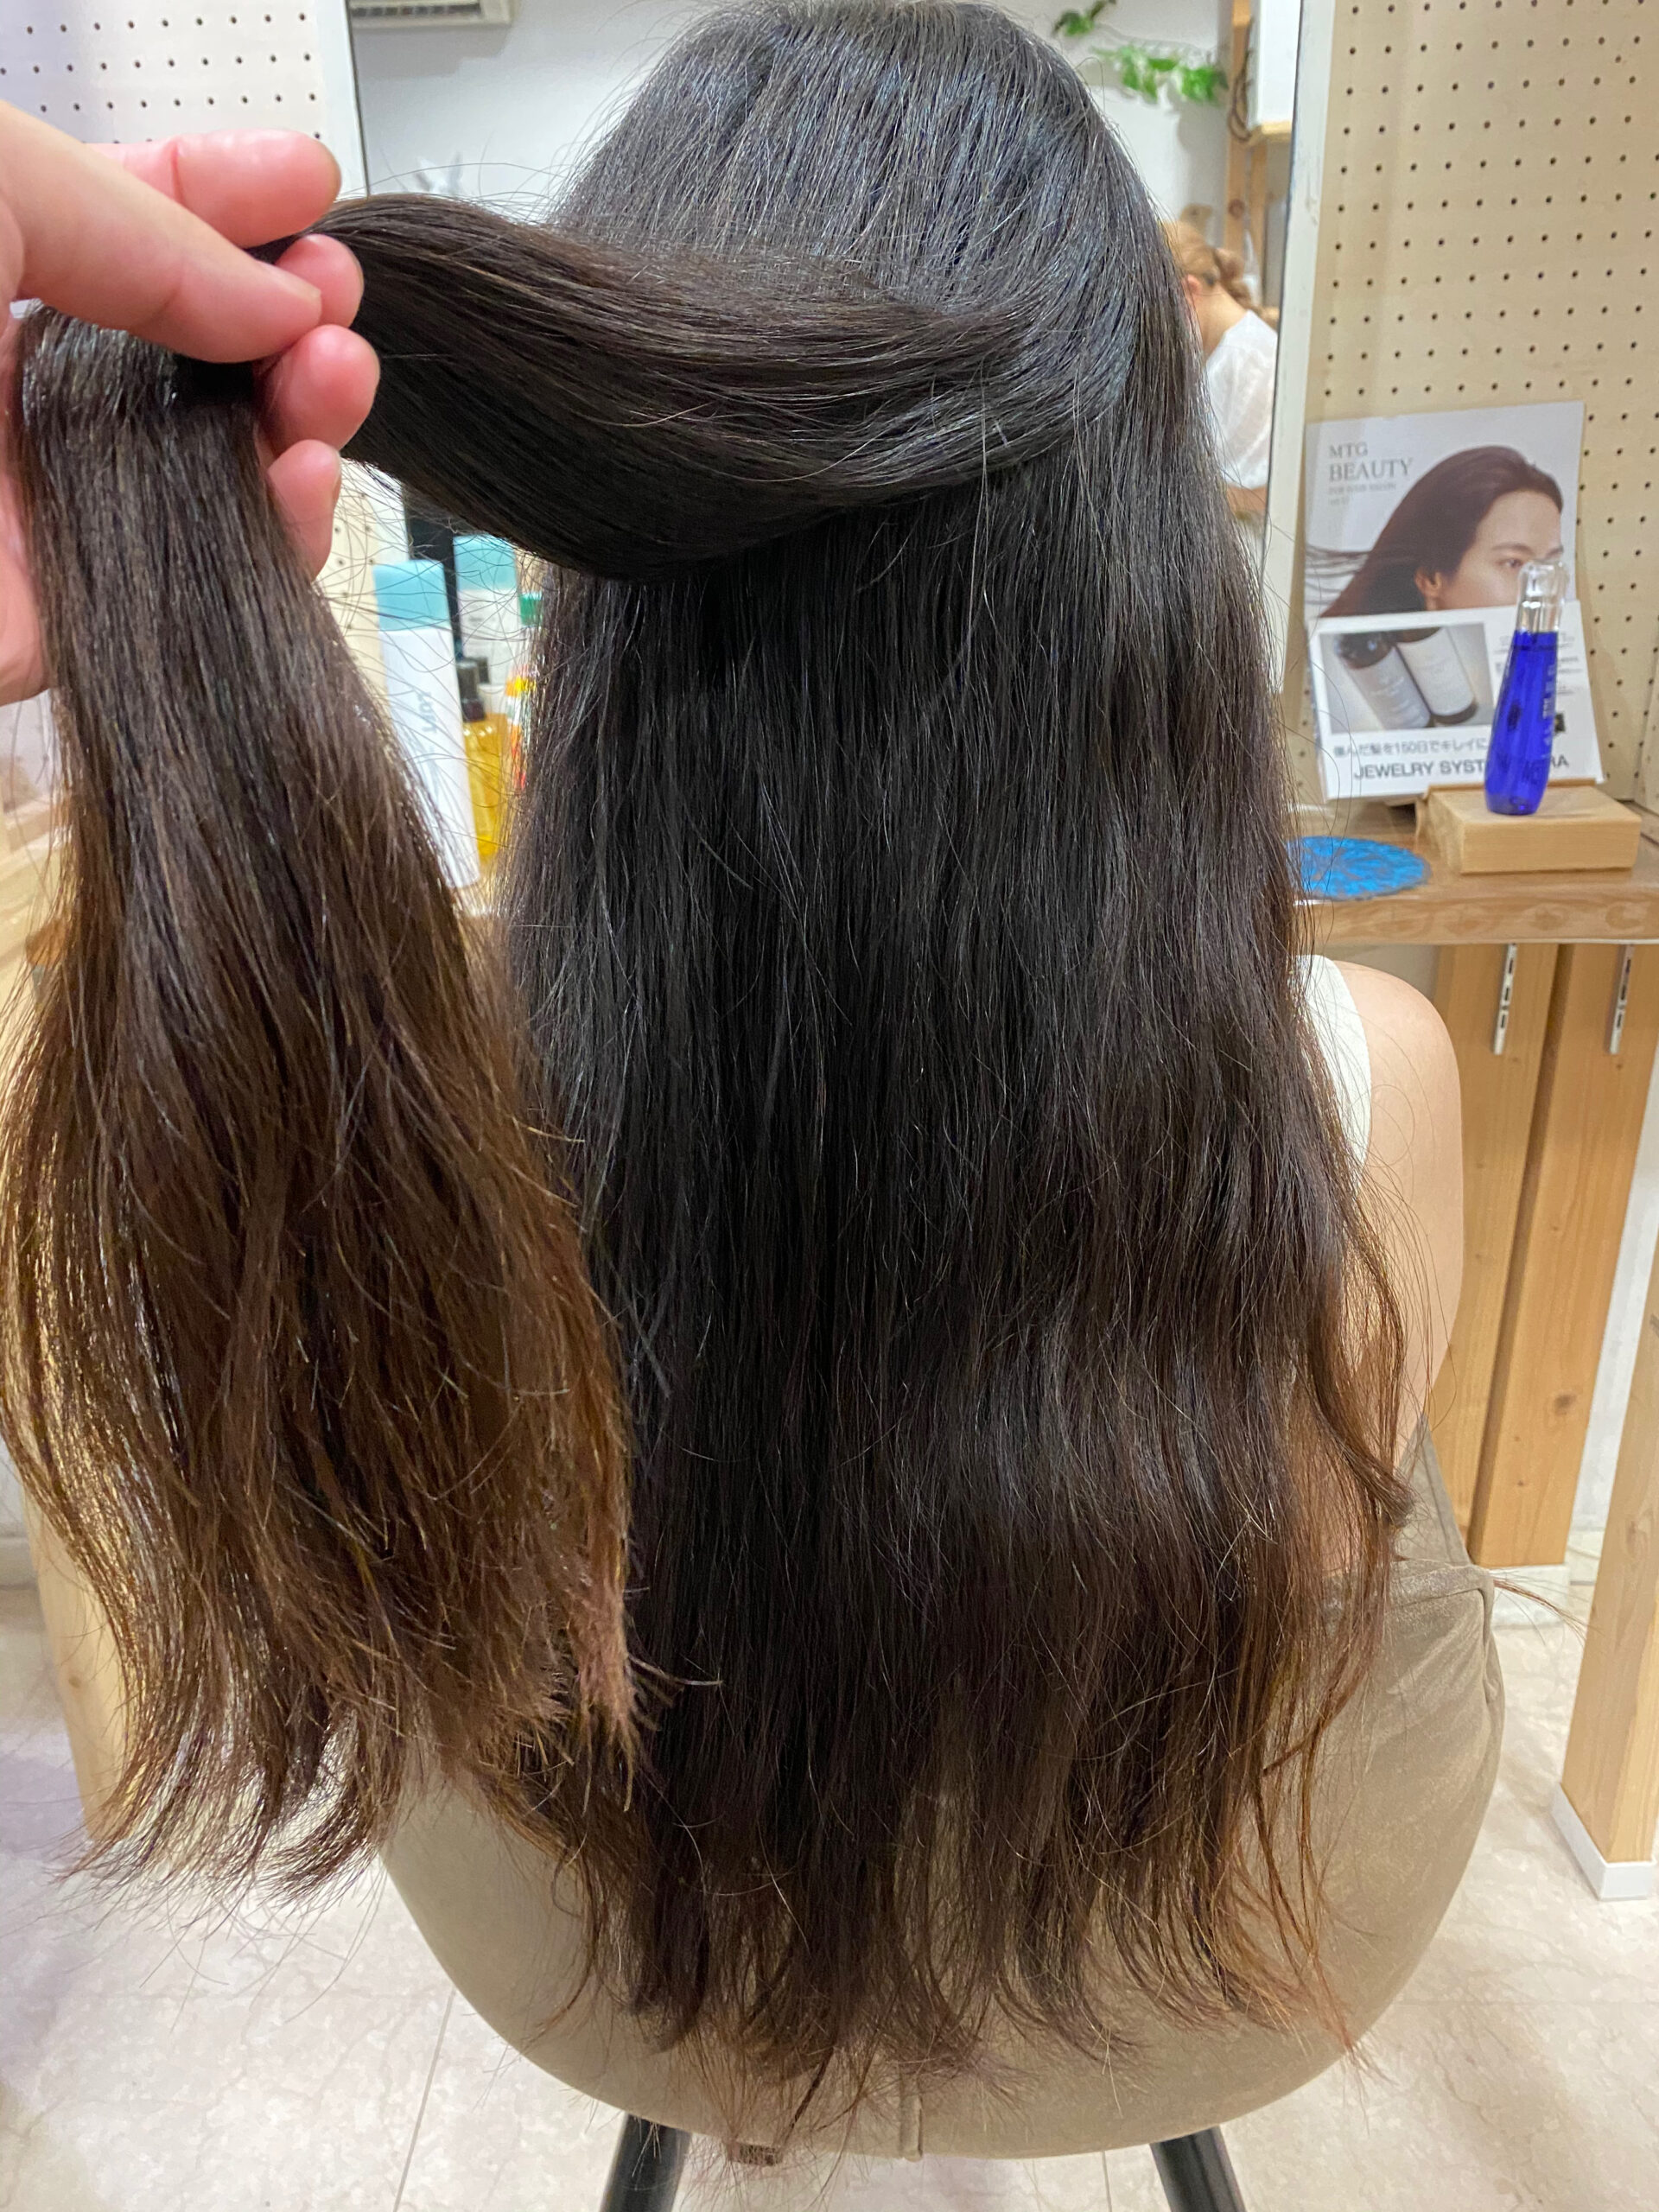 デジタルパーマでパサついてしまった髪を【ジュエリーシステム×LULUトリートメント×縮毛矯正】で艶髪。